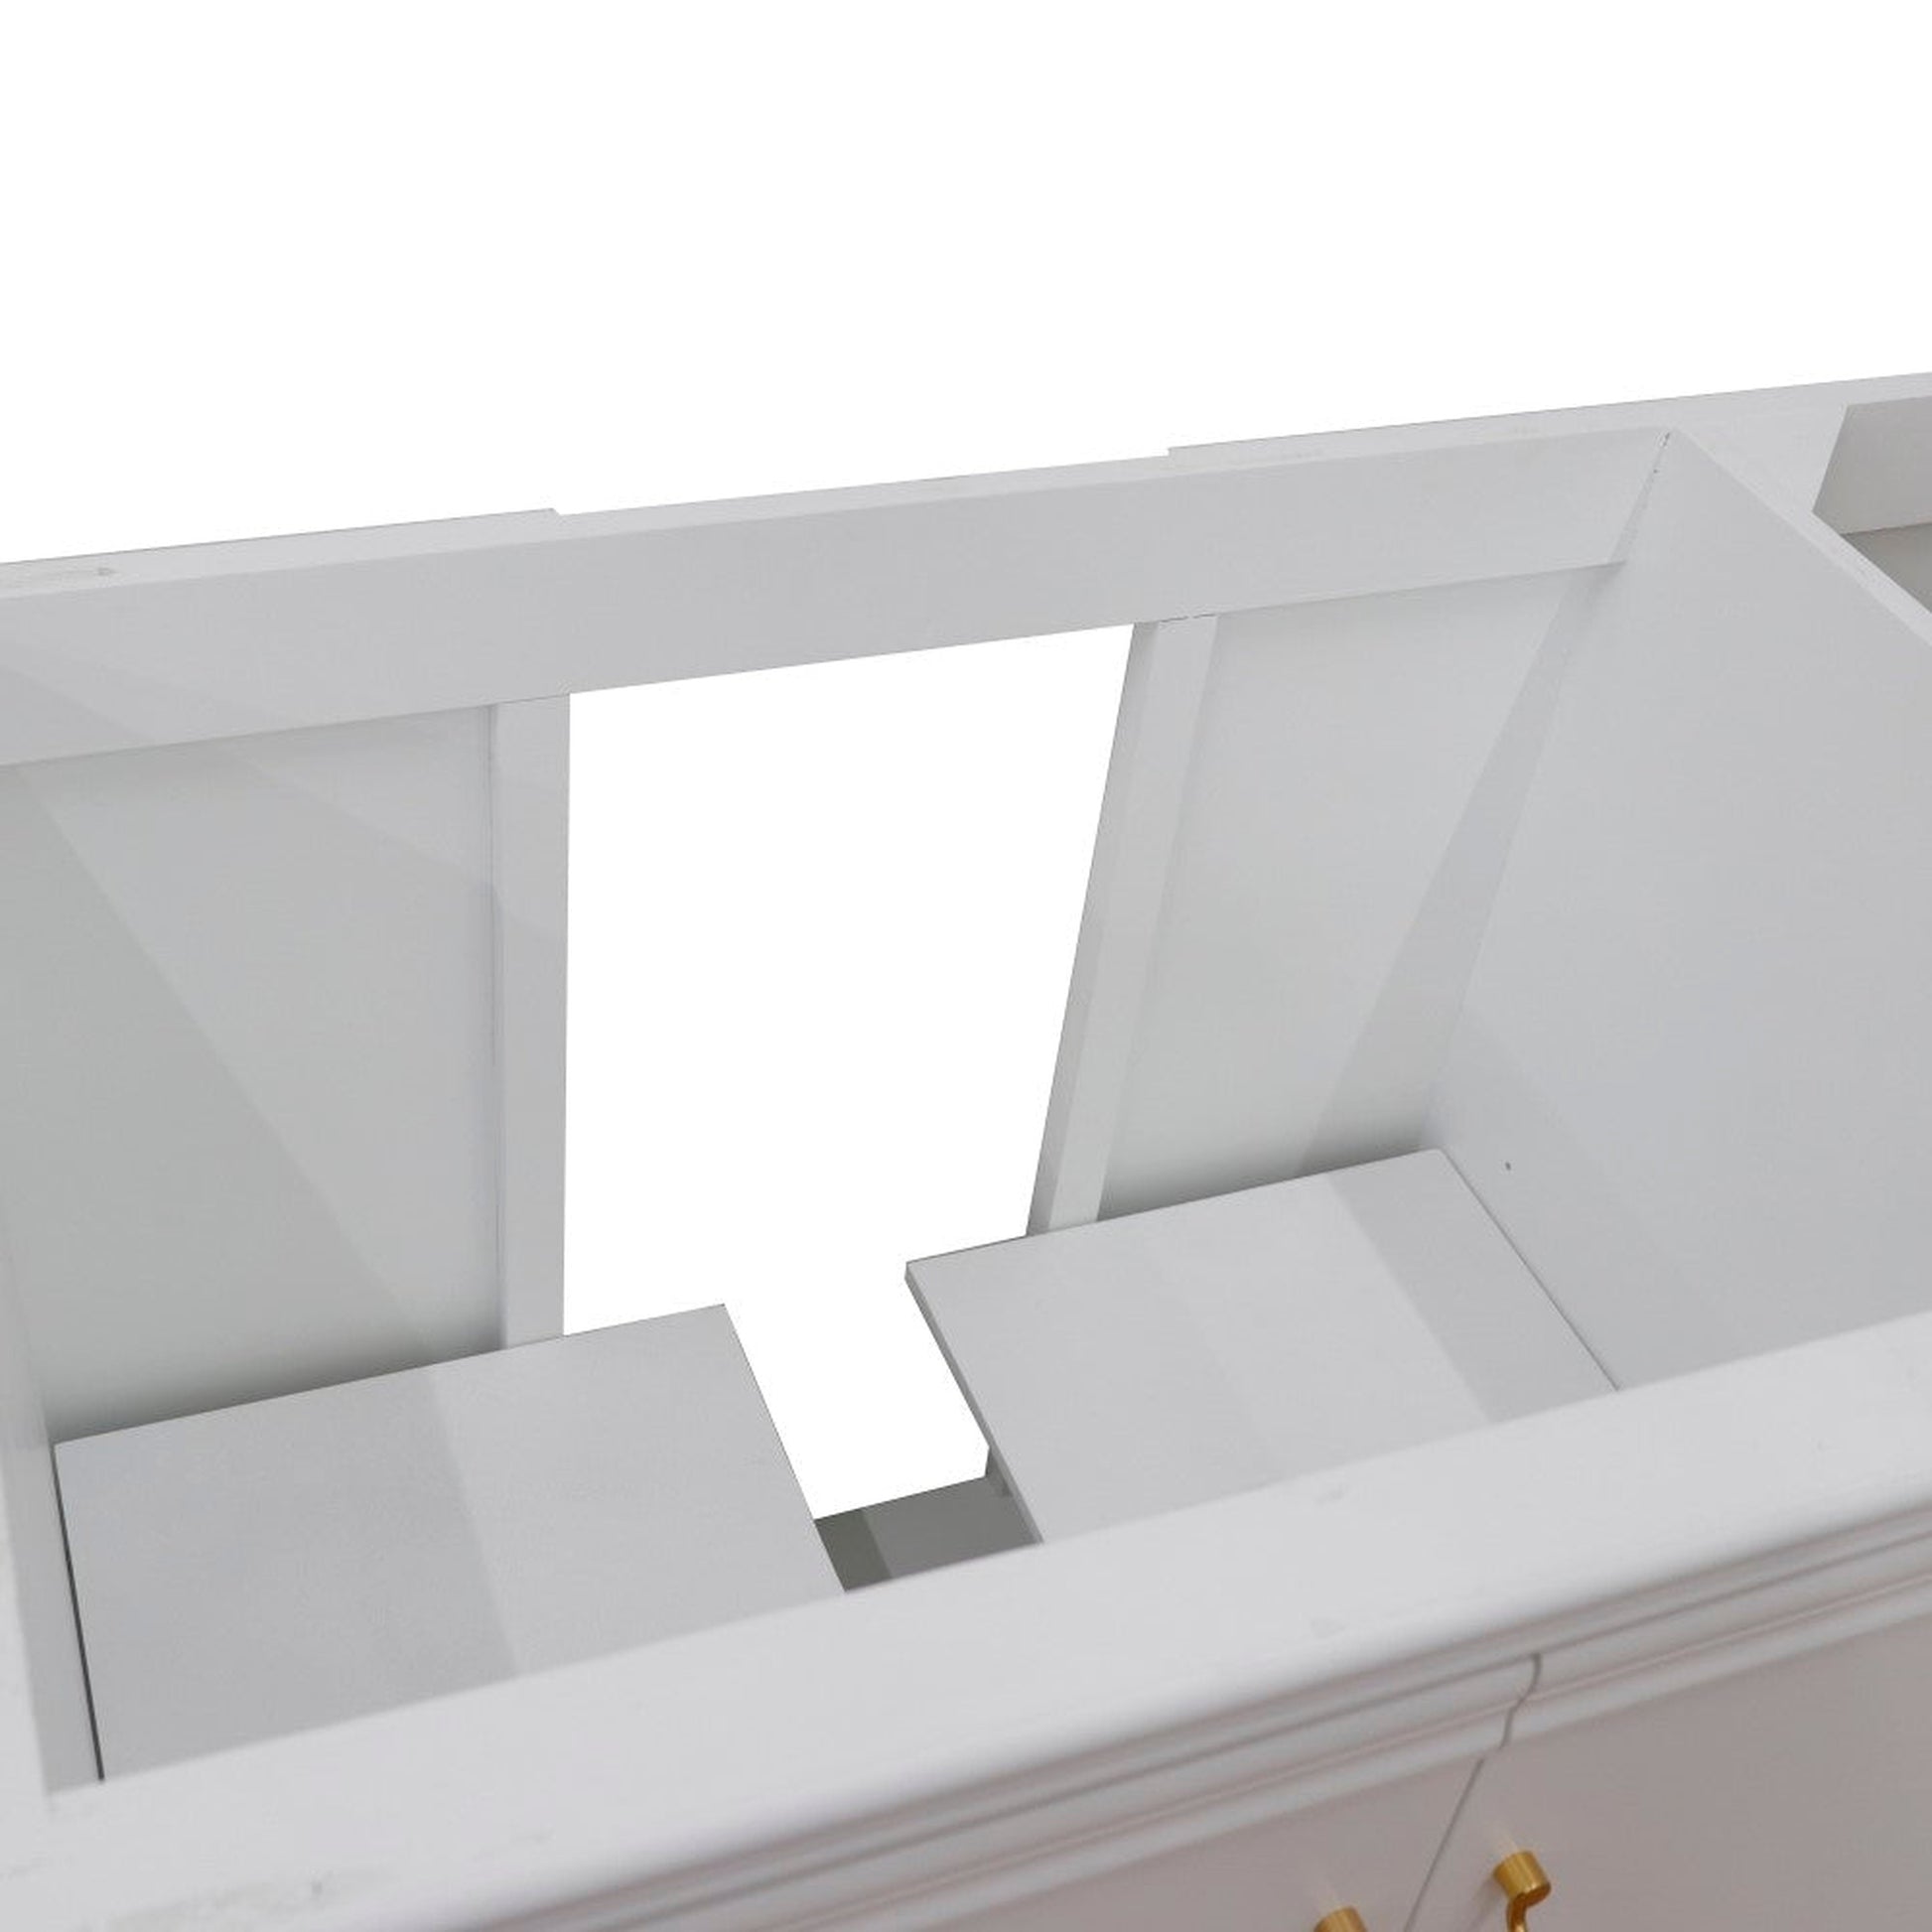 Bellaterra Home Forli 60" 2-Door 6-Drawer White Freestanding Single Vanity Base